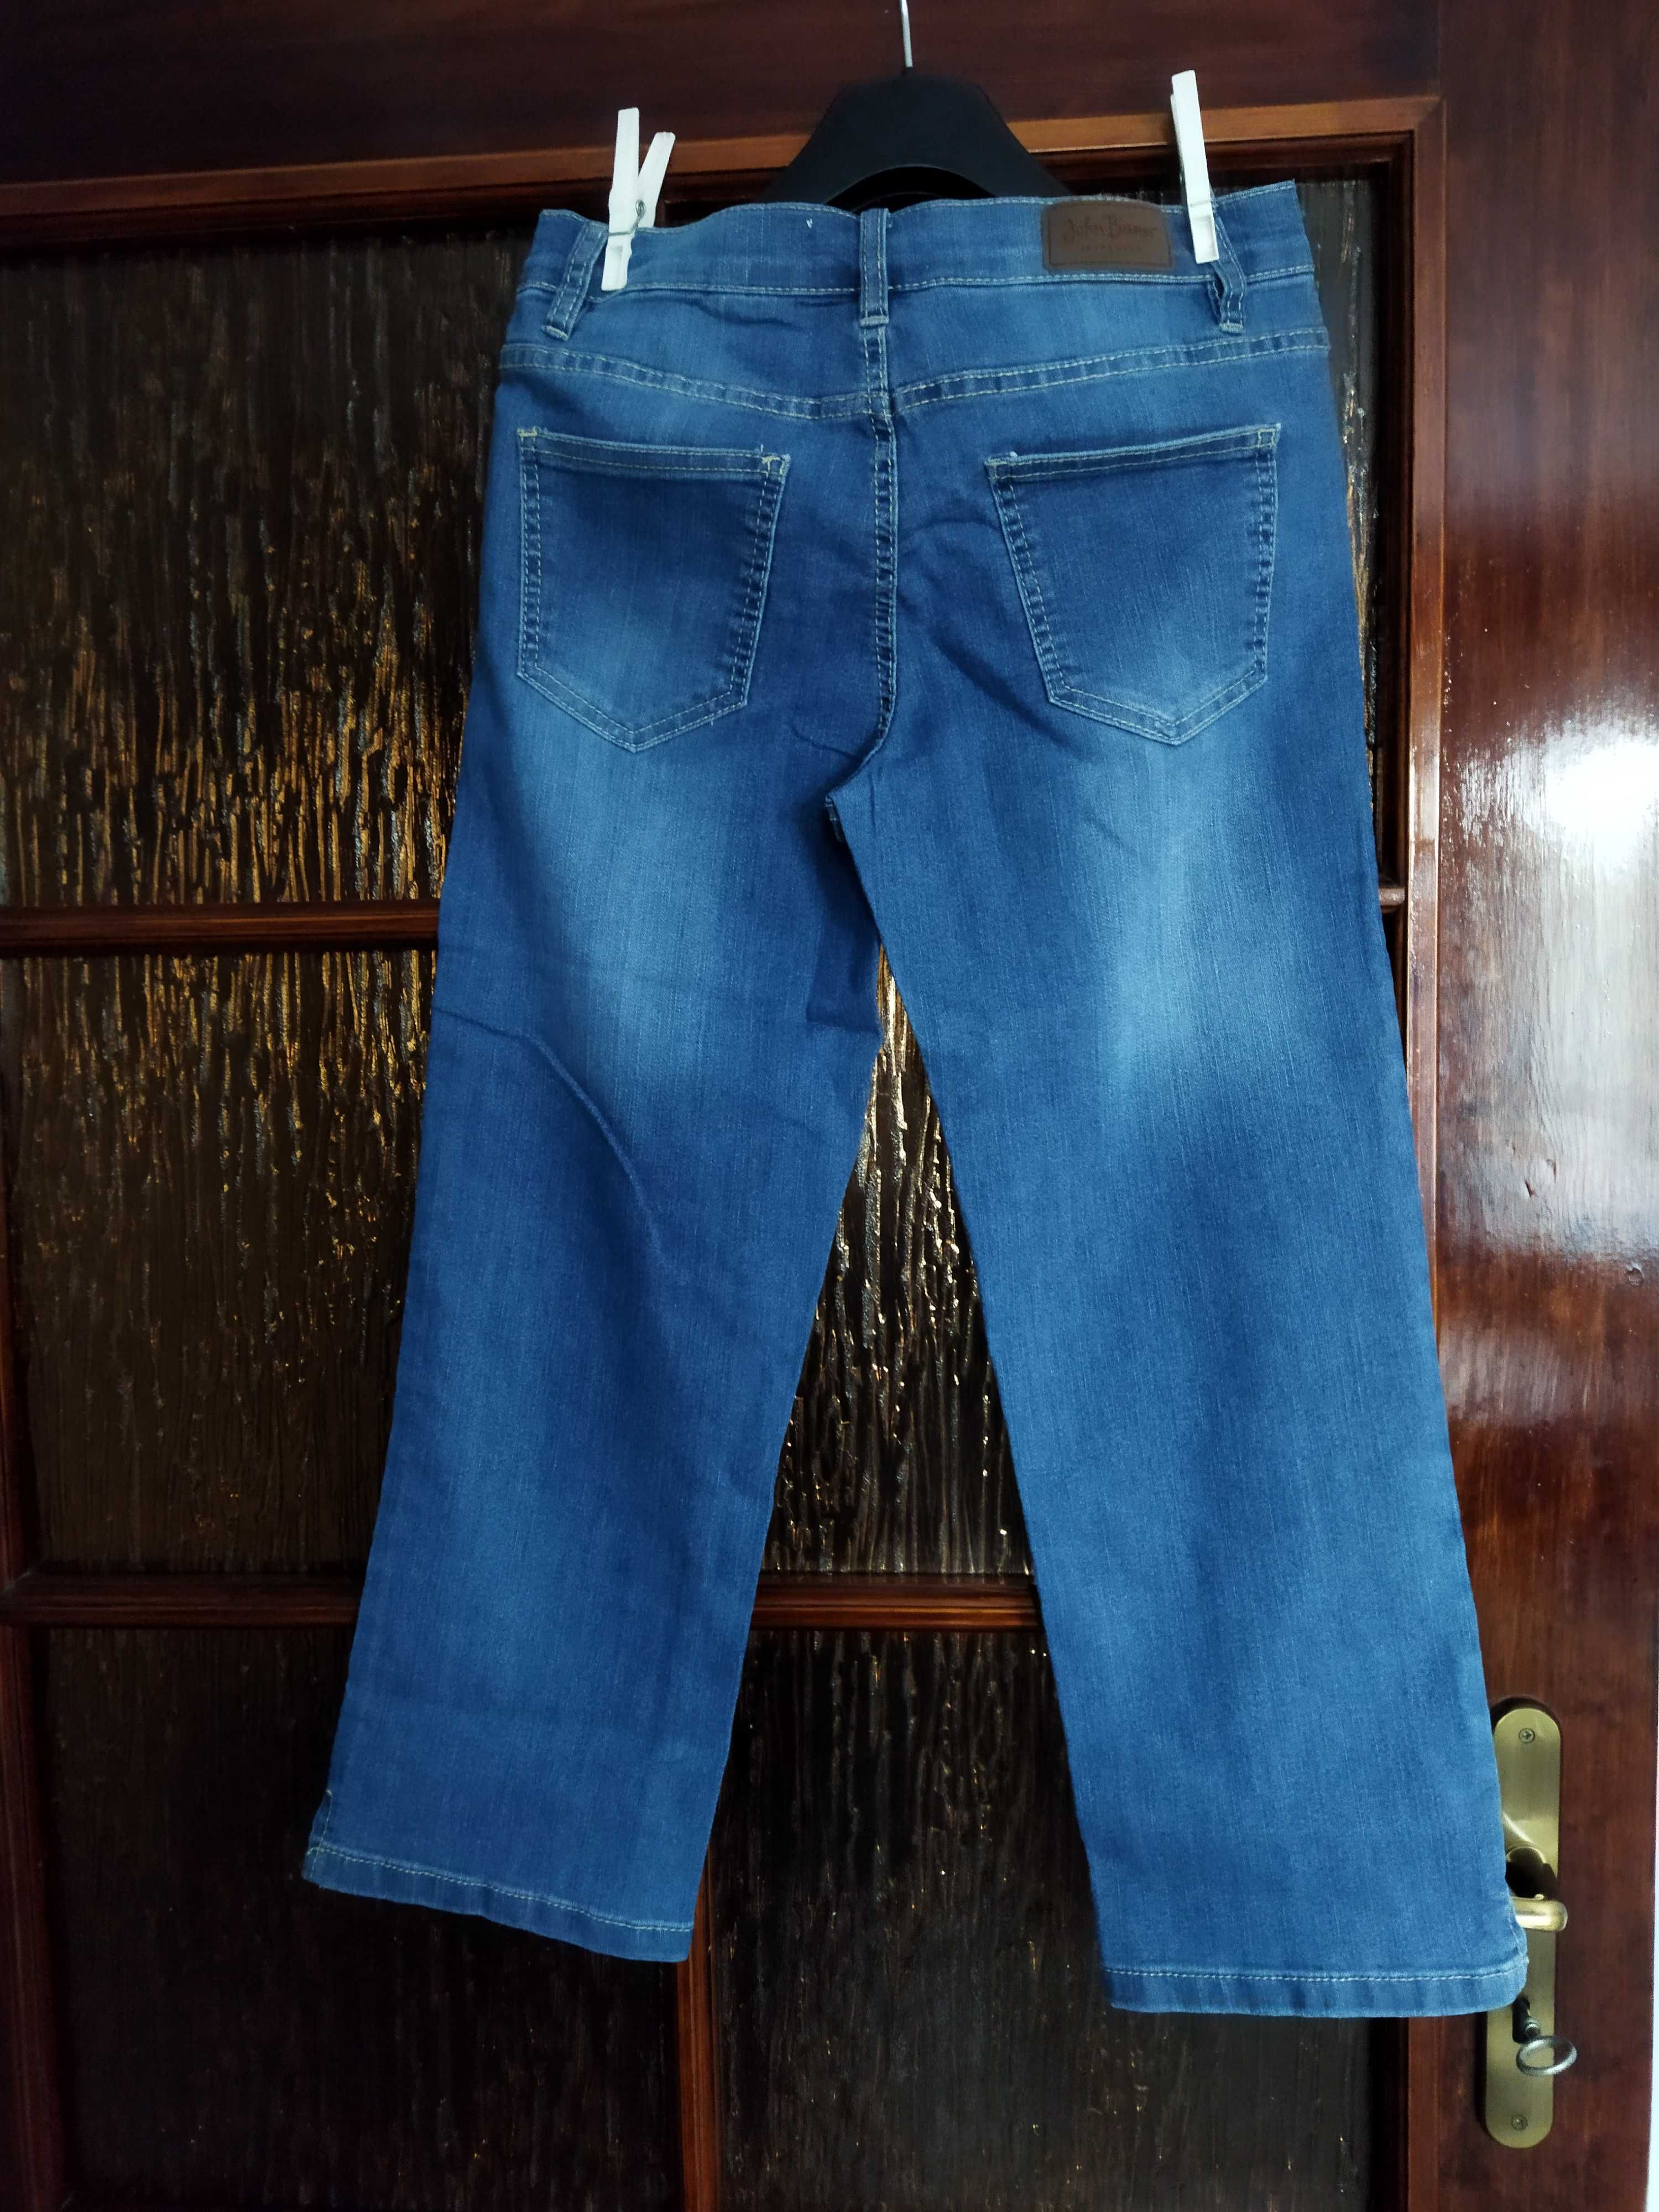 Spodnie NOWE damskie 36 Bonprix długość 7/8 dżinsy jeans John Baner